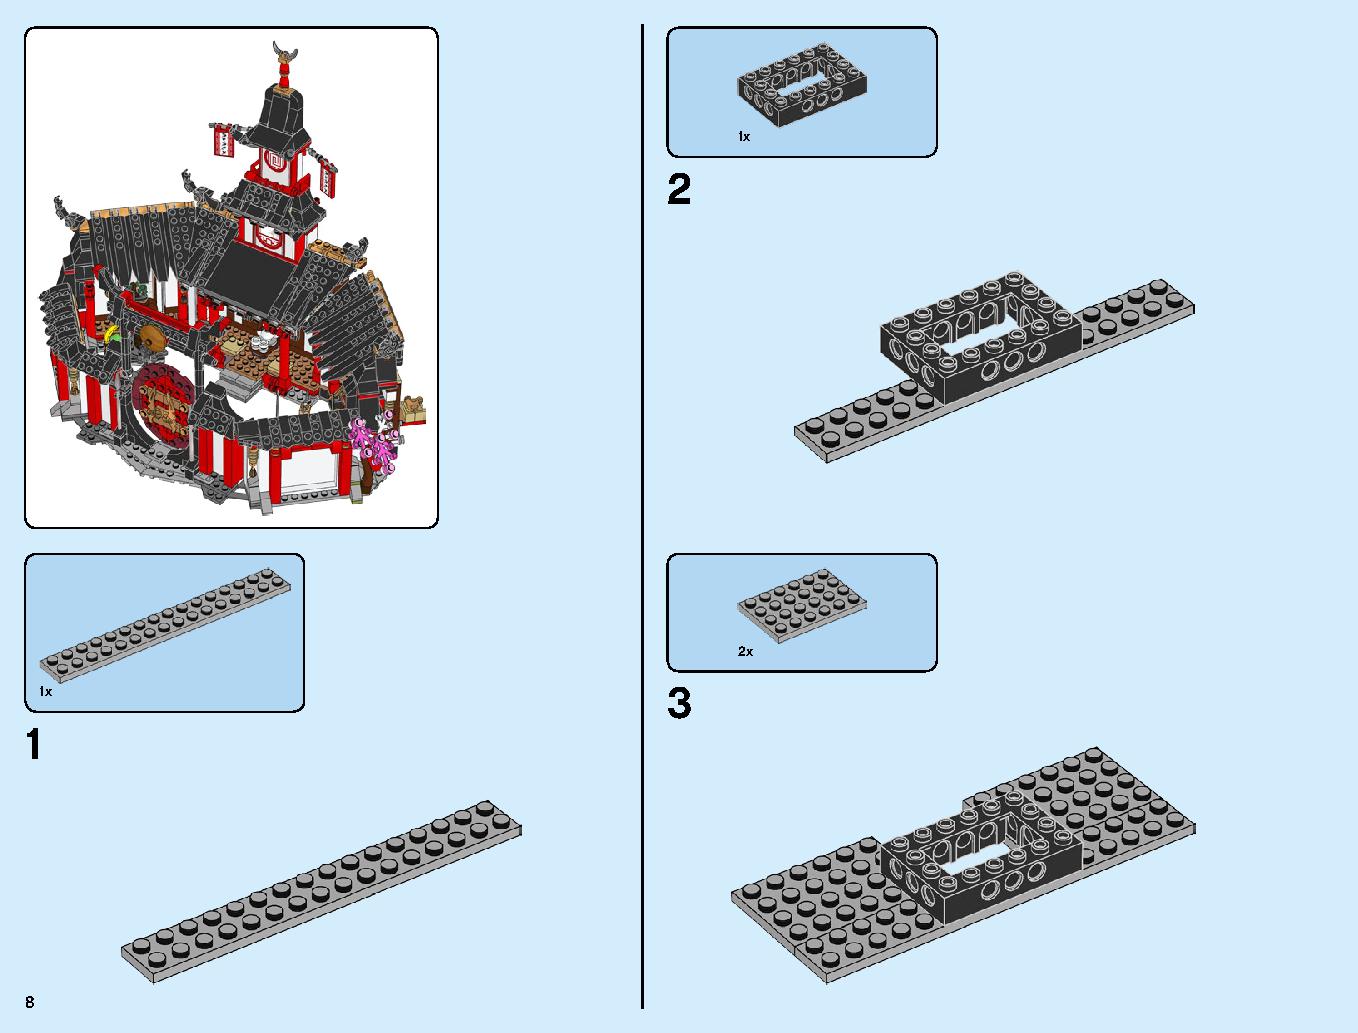 ニンジャ道場 70670 レゴの商品情報 レゴの説明書・組立方法 8 page